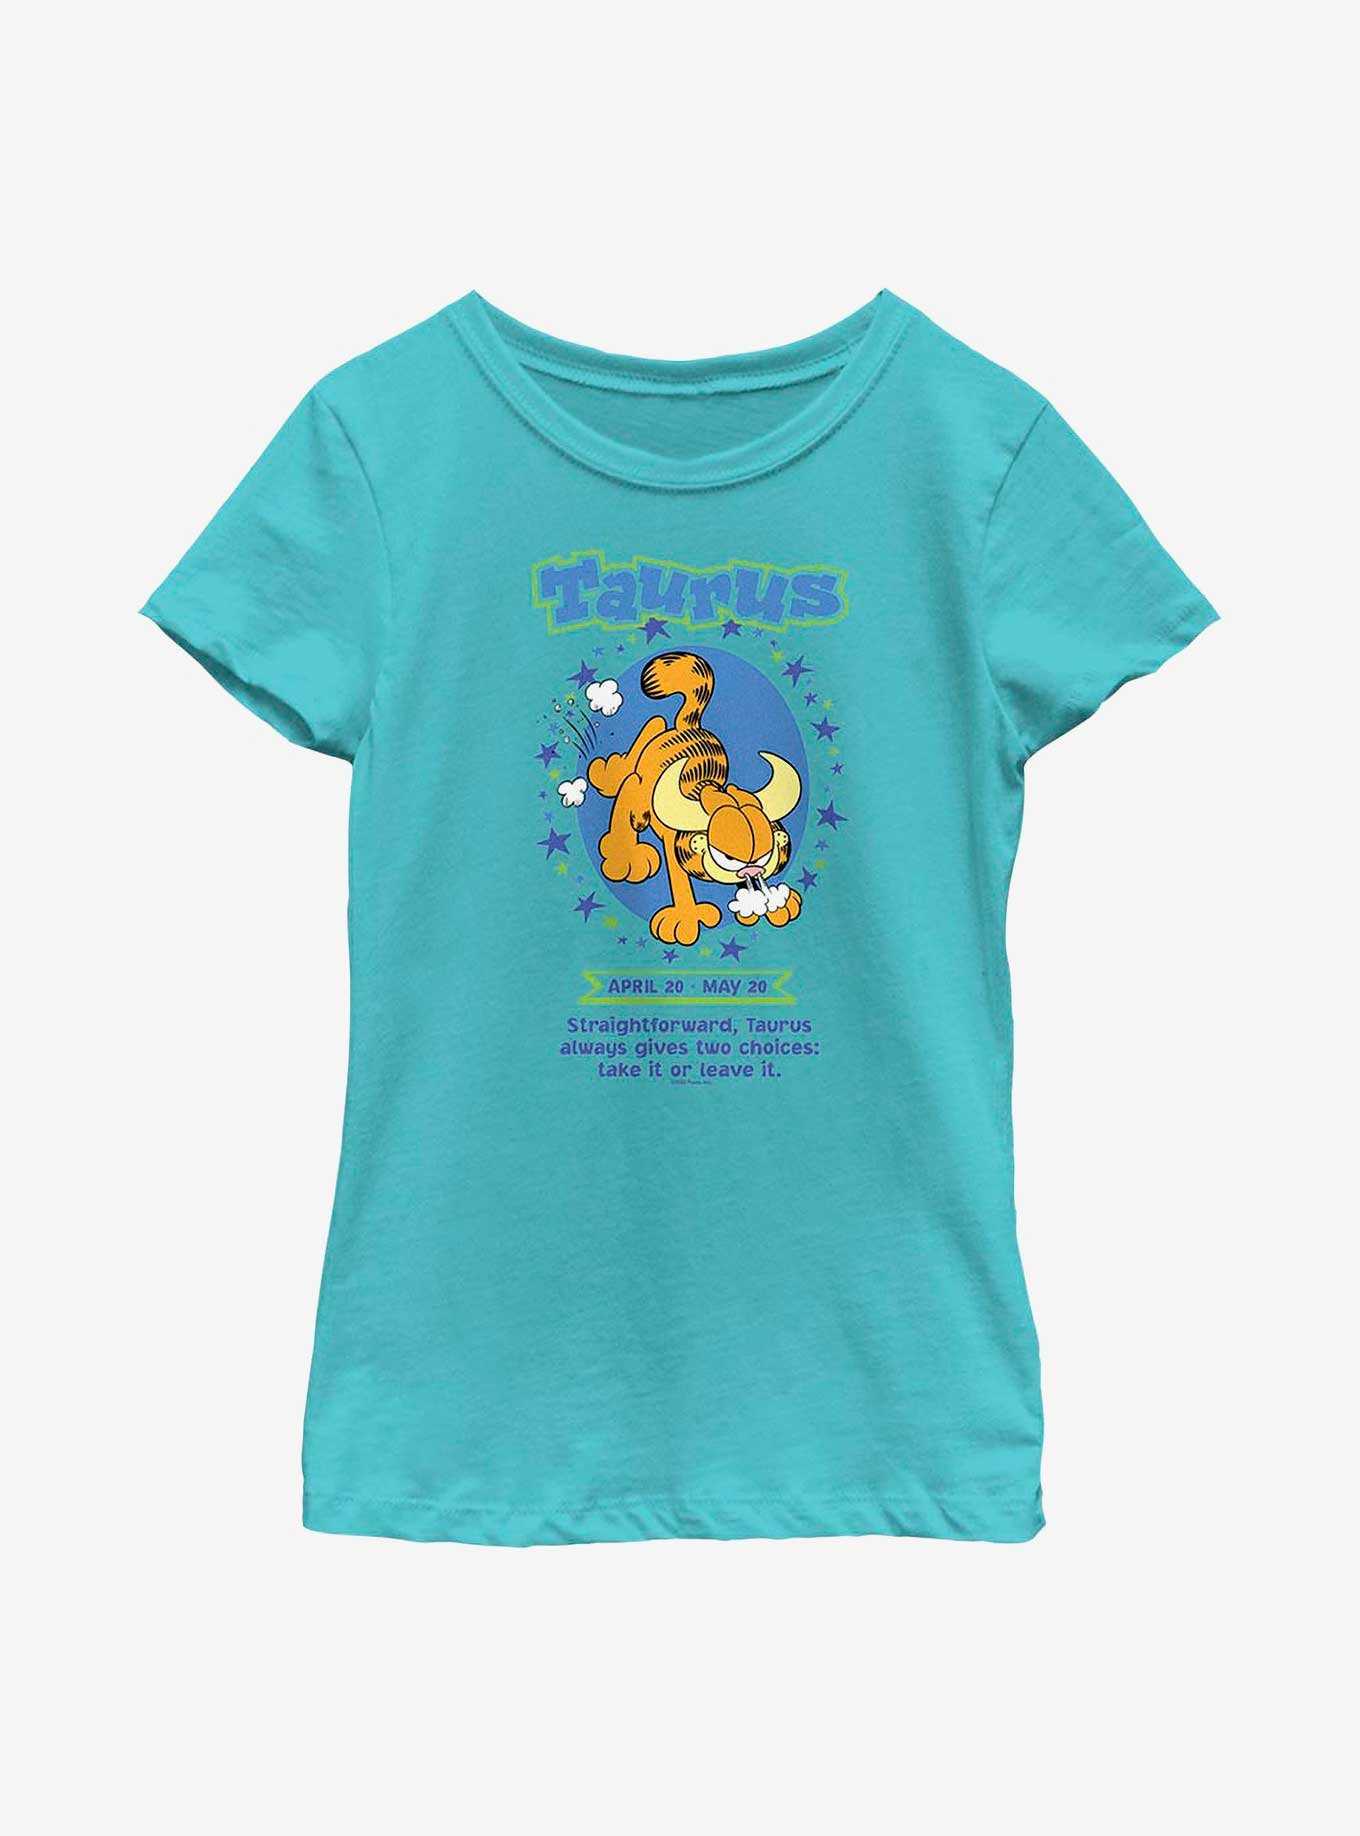 Garfield Taurus Horoscope Youth Girl's T-Shirt, , hi-res